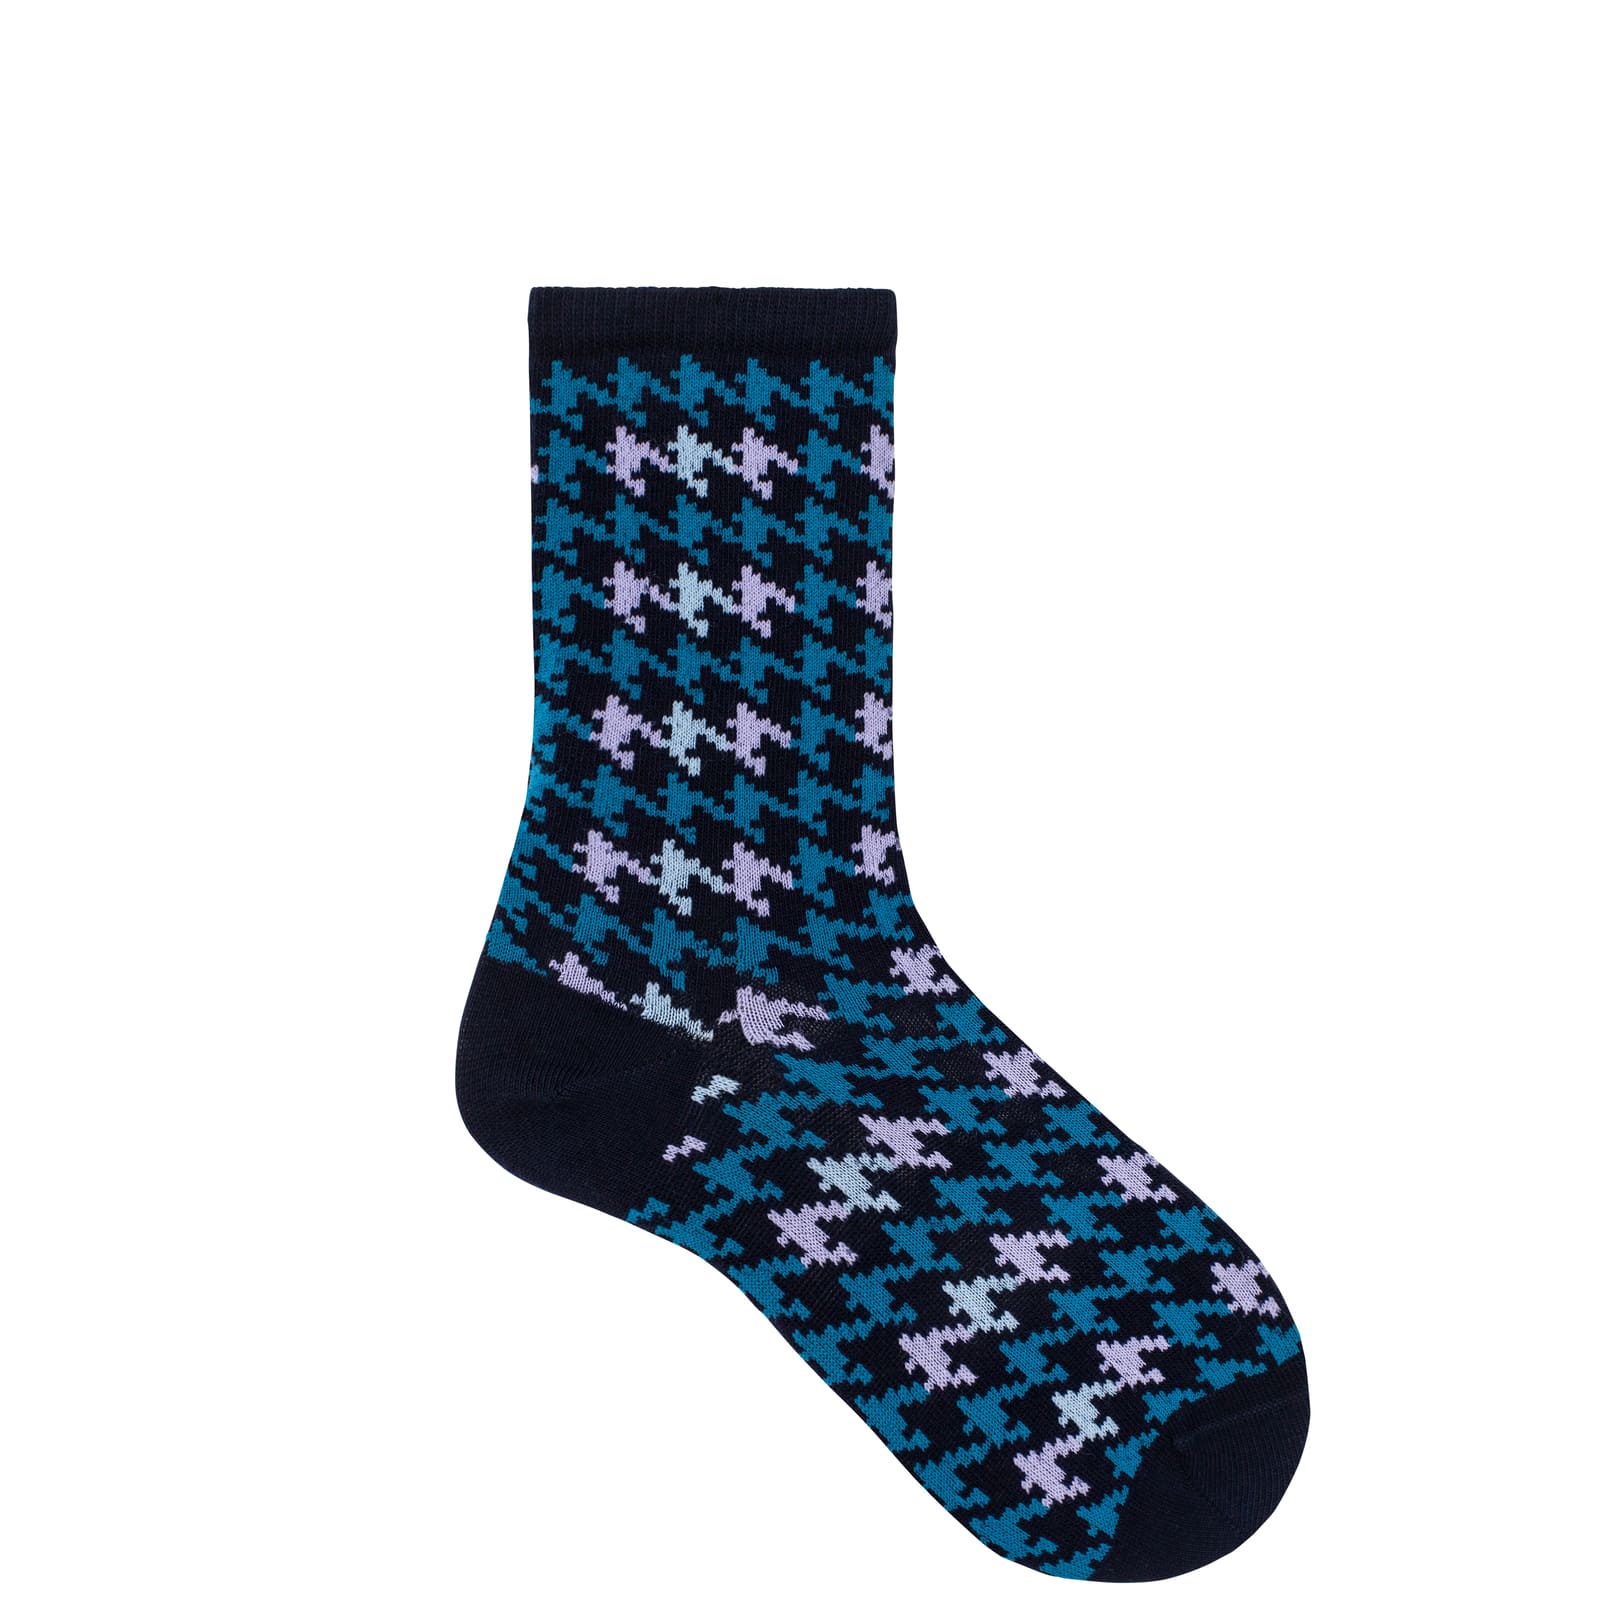 HUDSON Damen HOUNDSTOOTH -  39/42 - Damen Socken mit angesagtem Hahnentritt-Muster - Marine (Blau)